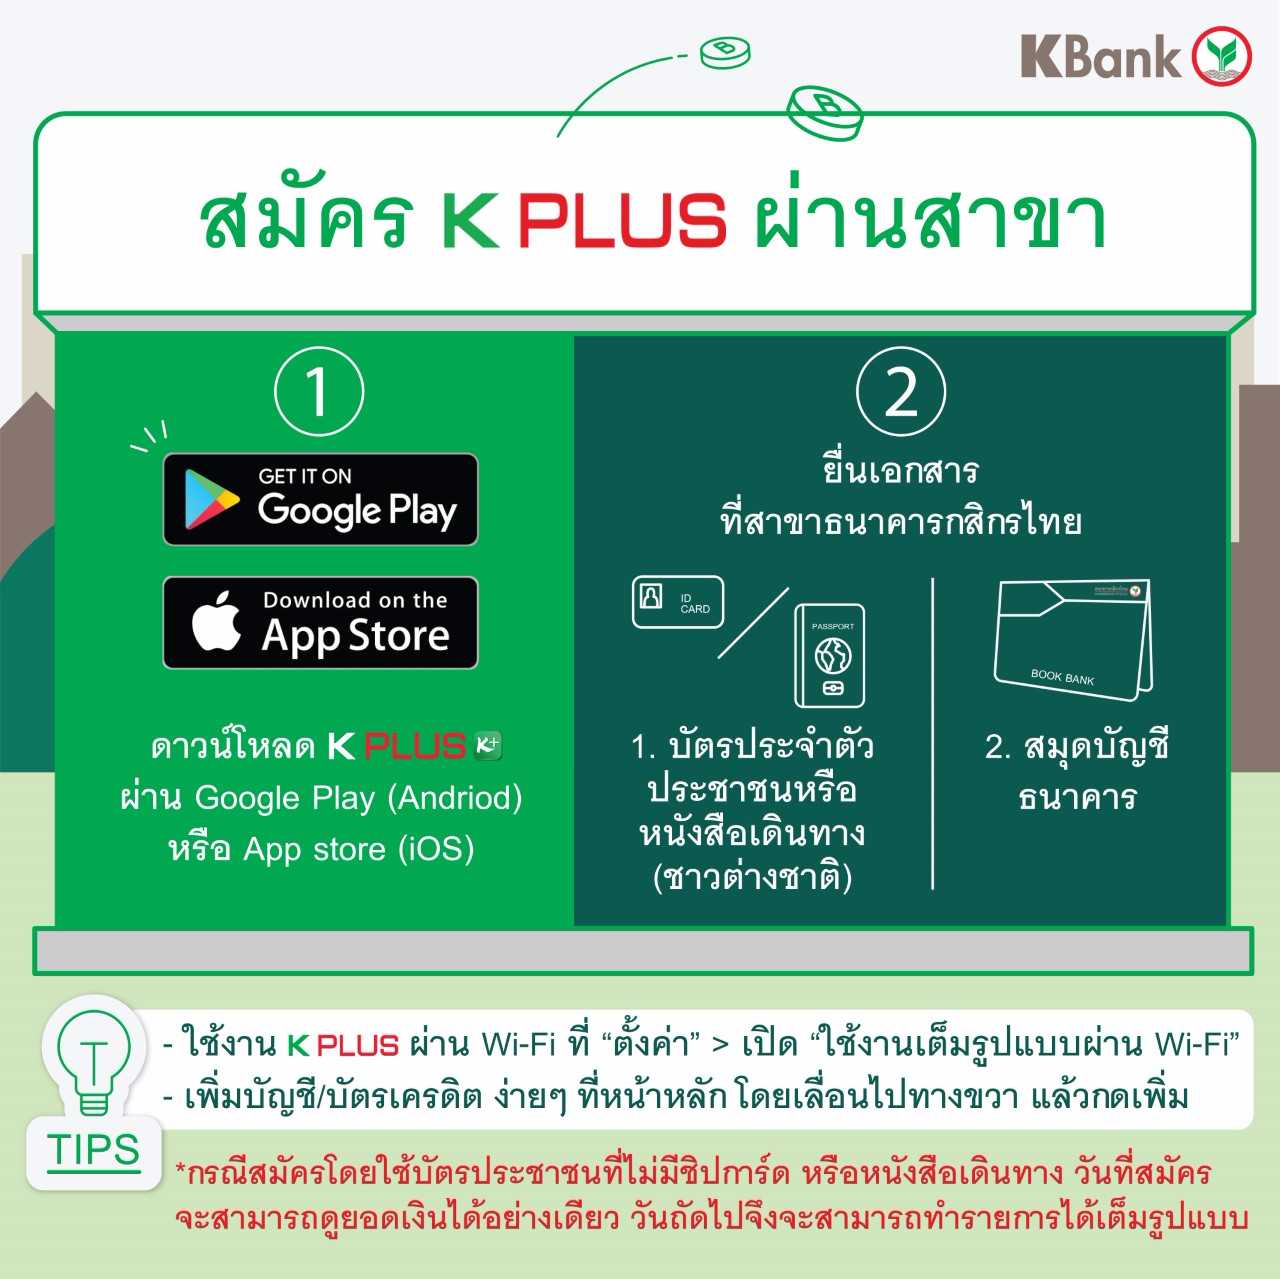 เอกสารเปิดบัญชีธนาคารกสิกรไทย: ขั้นตอนและวิธีที่คุณต้องทราบ - Kcn Việt Phát